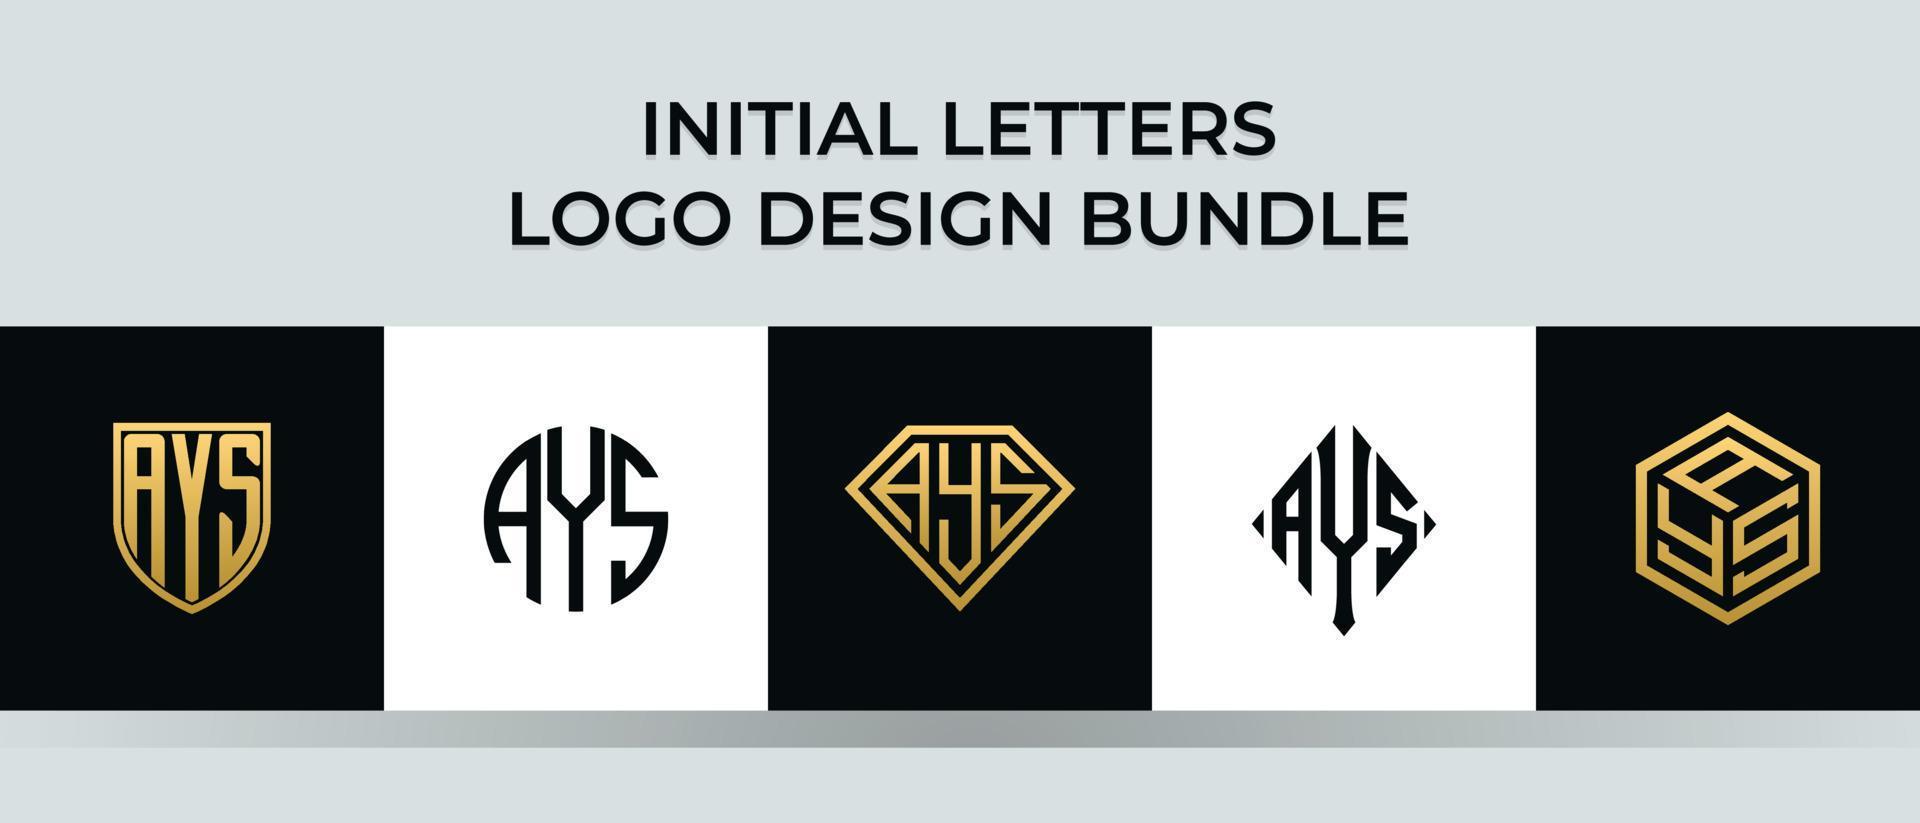 beginletters ays logo ontwerpen bundel vector